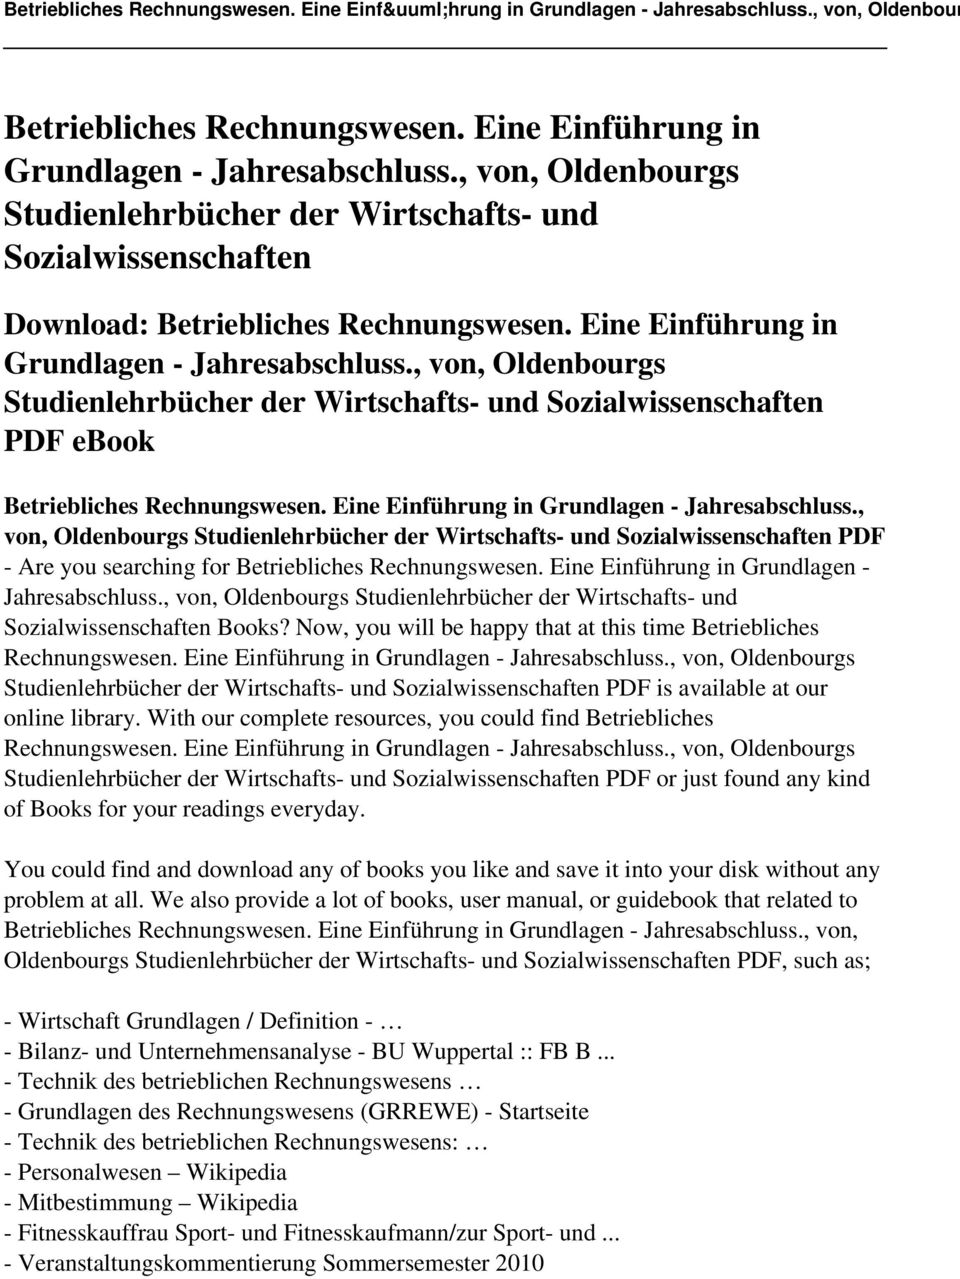 Eine Einführung in Grundlagen - Jahresabschluss., von, Oldenbourgs Studienlehrbücher der Wirtschafts- und Sozialwissenschaften PDF - Are you searching for Betriebliches Rechnungswesen.